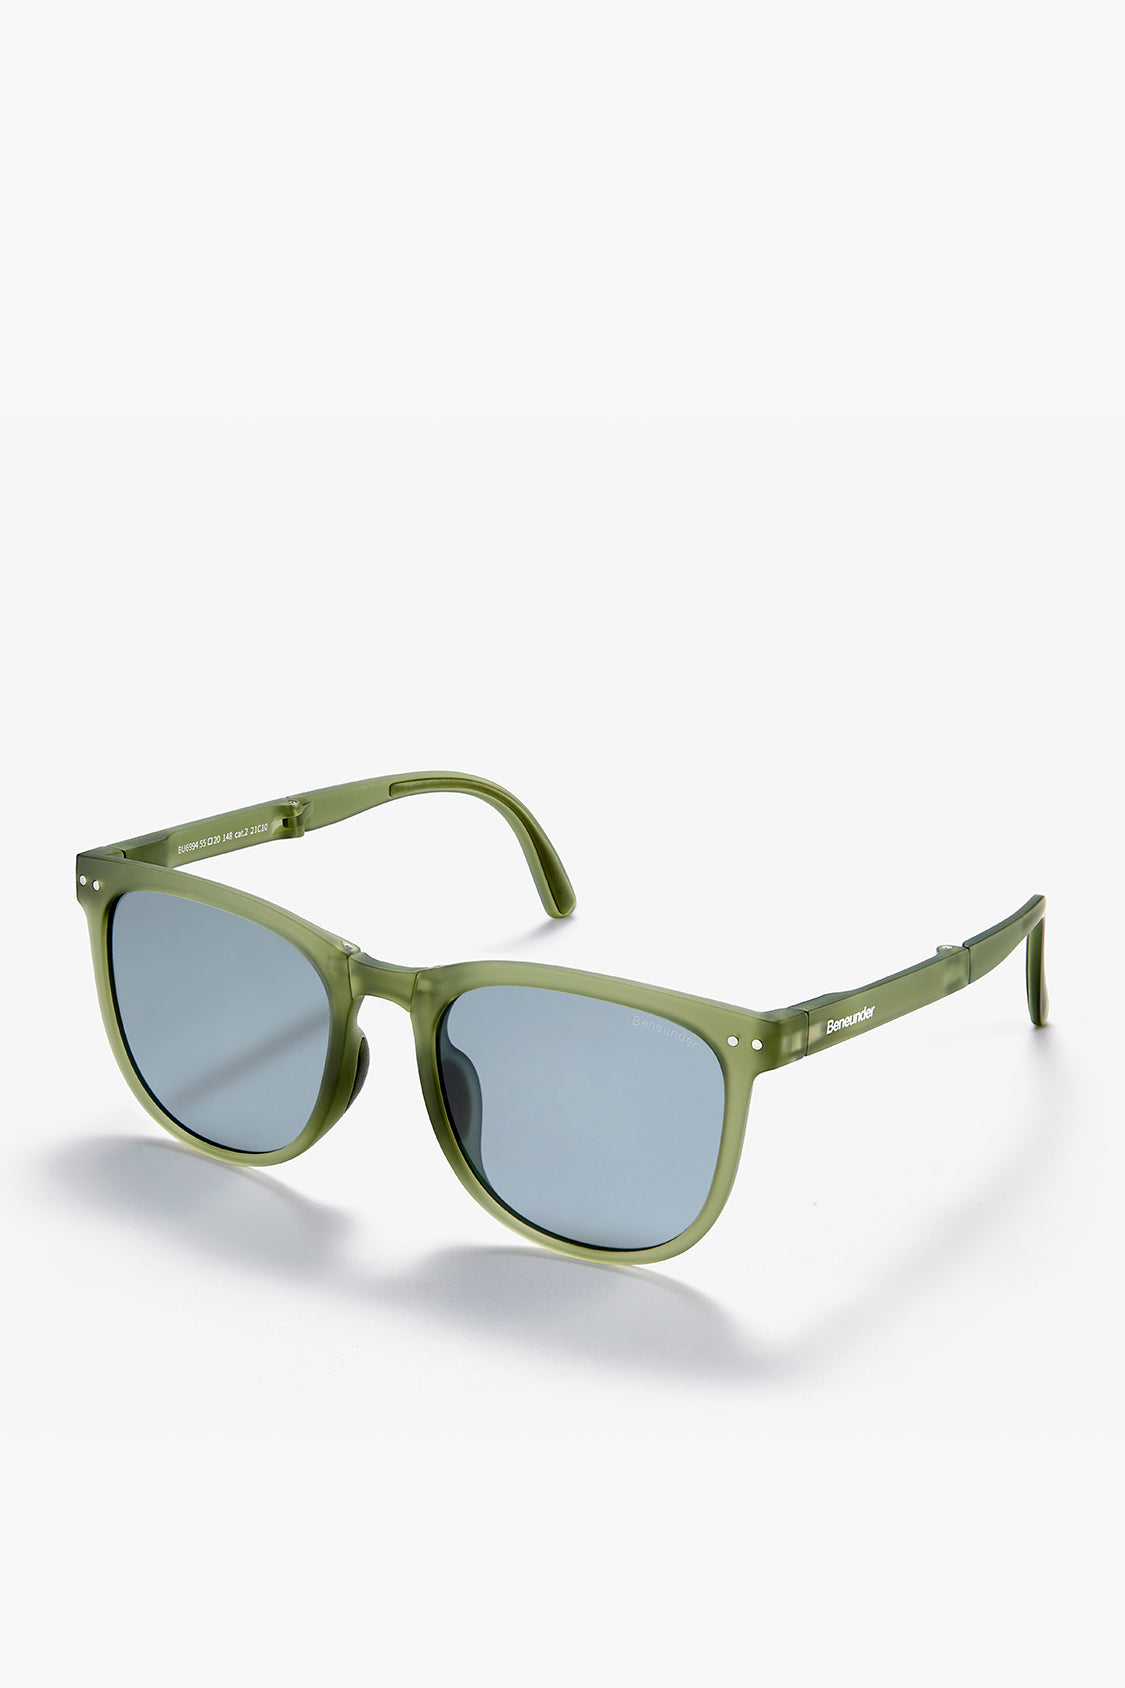 beneunder men's dawn polarized folding sunglasses shades #color_beneunder men's dawn polarized folding sunglasses shades #color_ink pine green